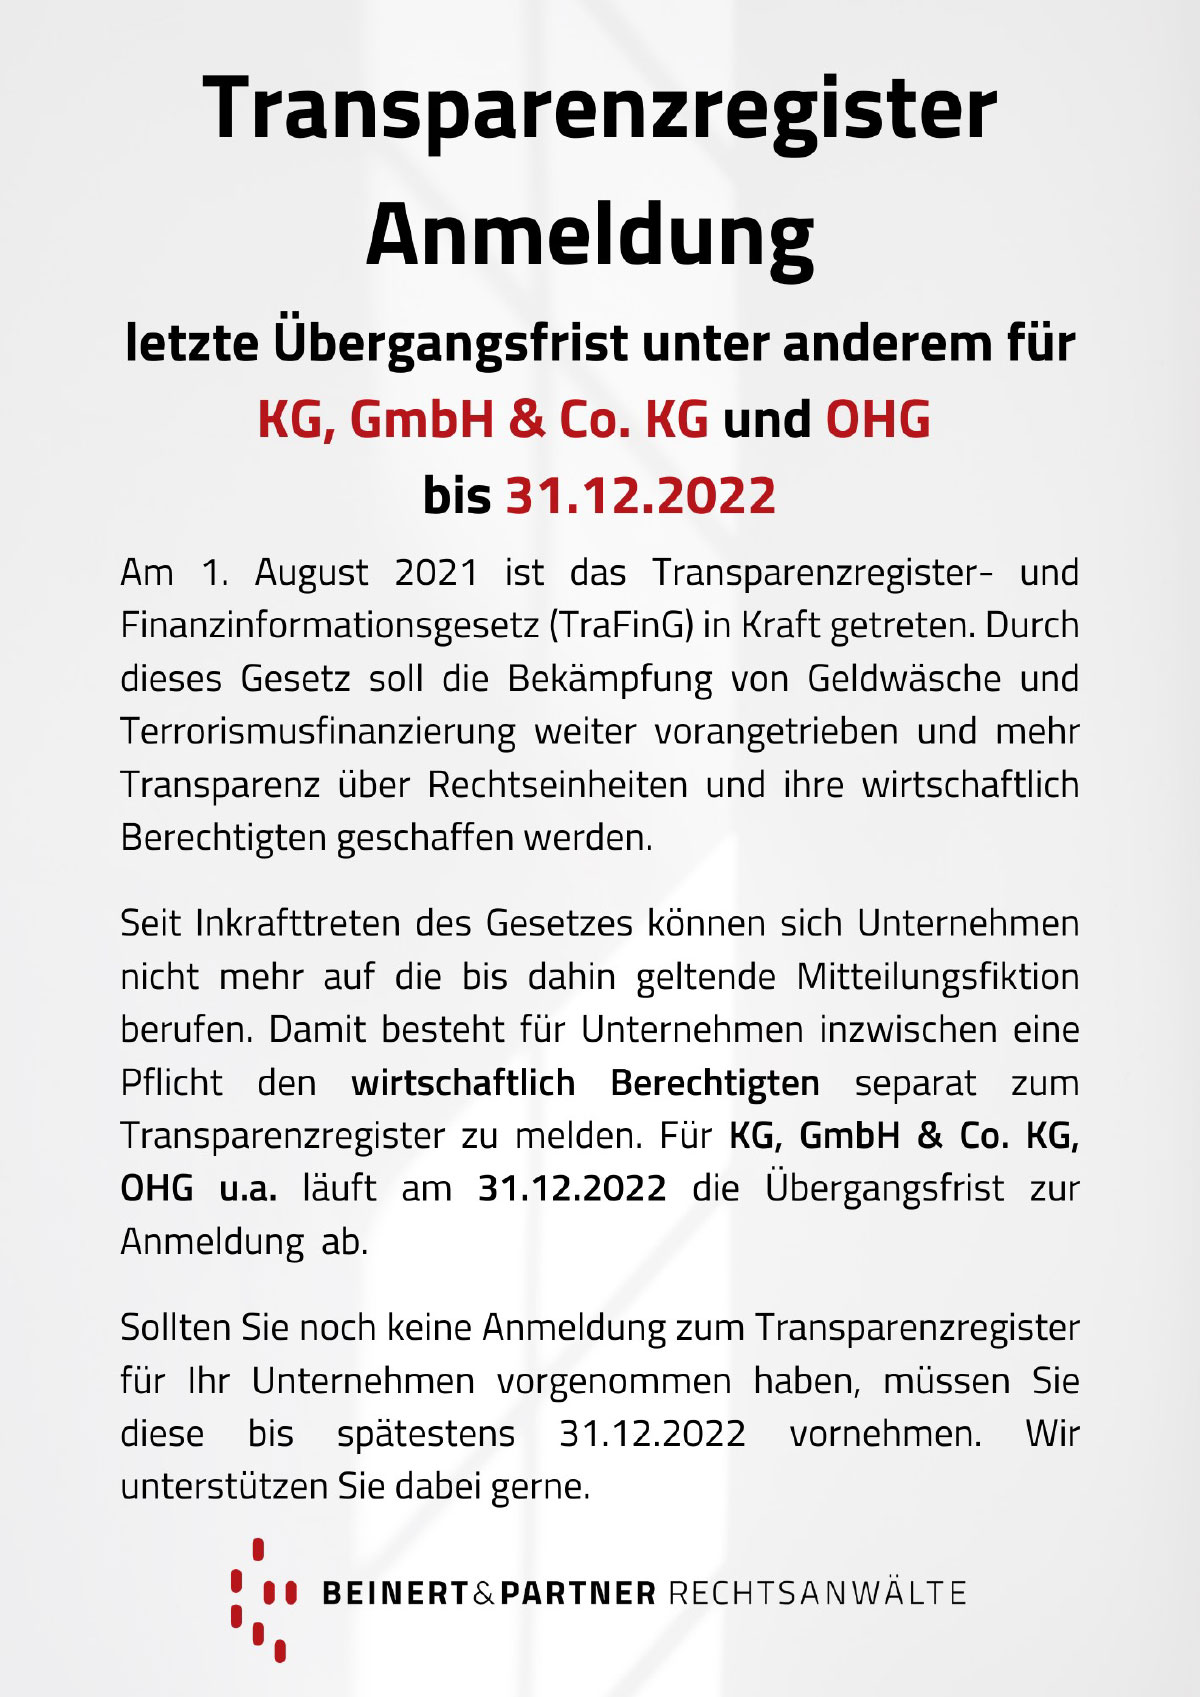 Erinnerung zur Anmeldung im Transparenzregister bis 31.12.22